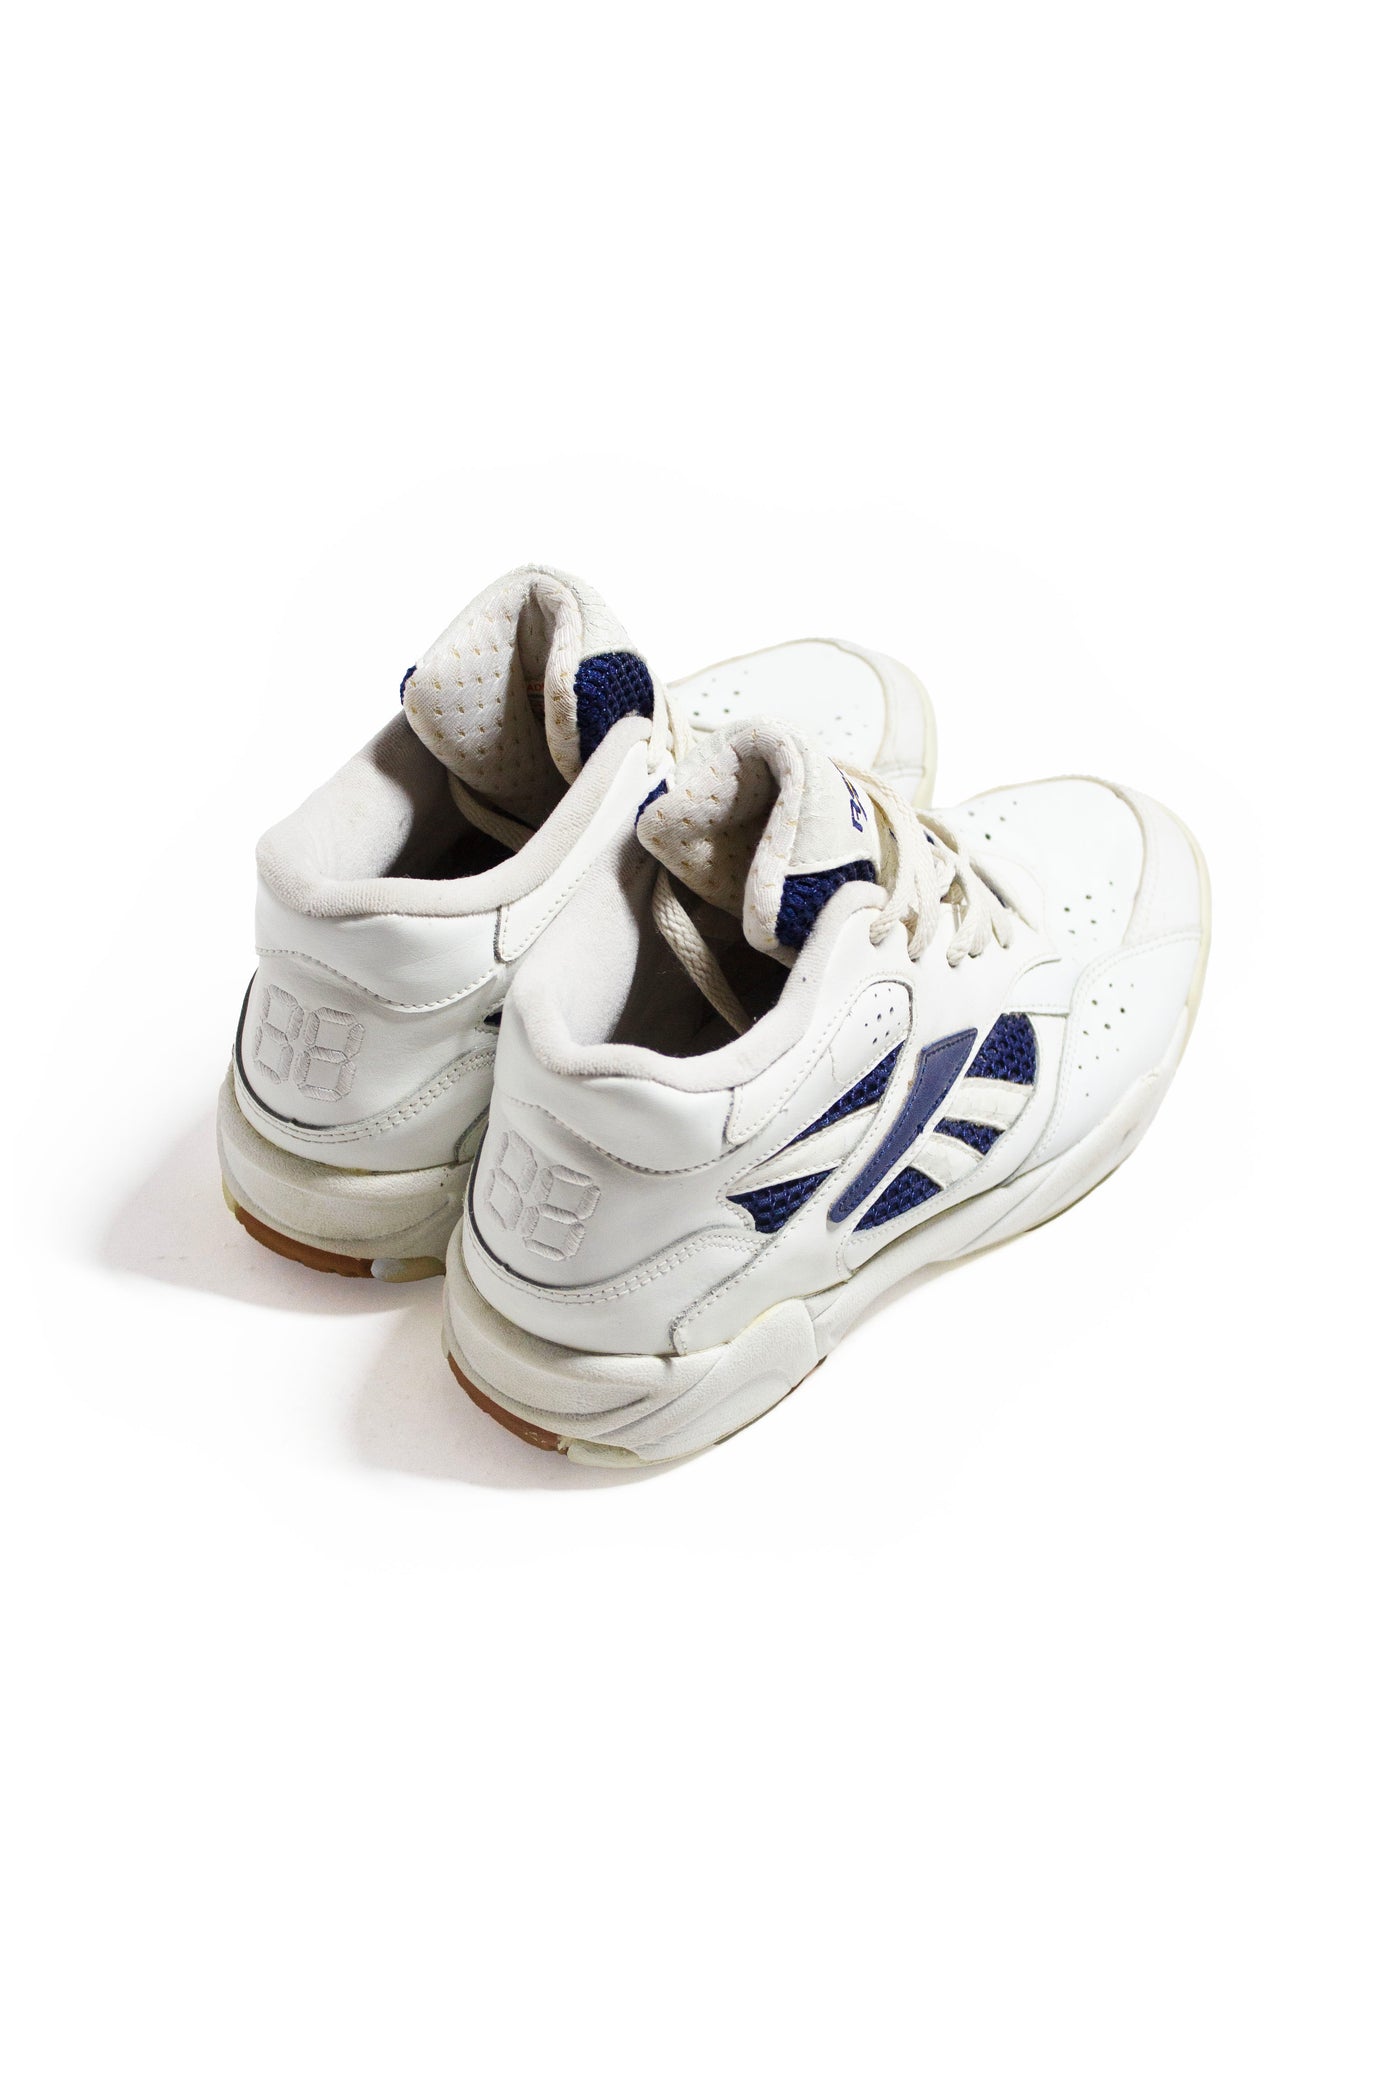 Vintage 90s Reebok Trainer Sneakers